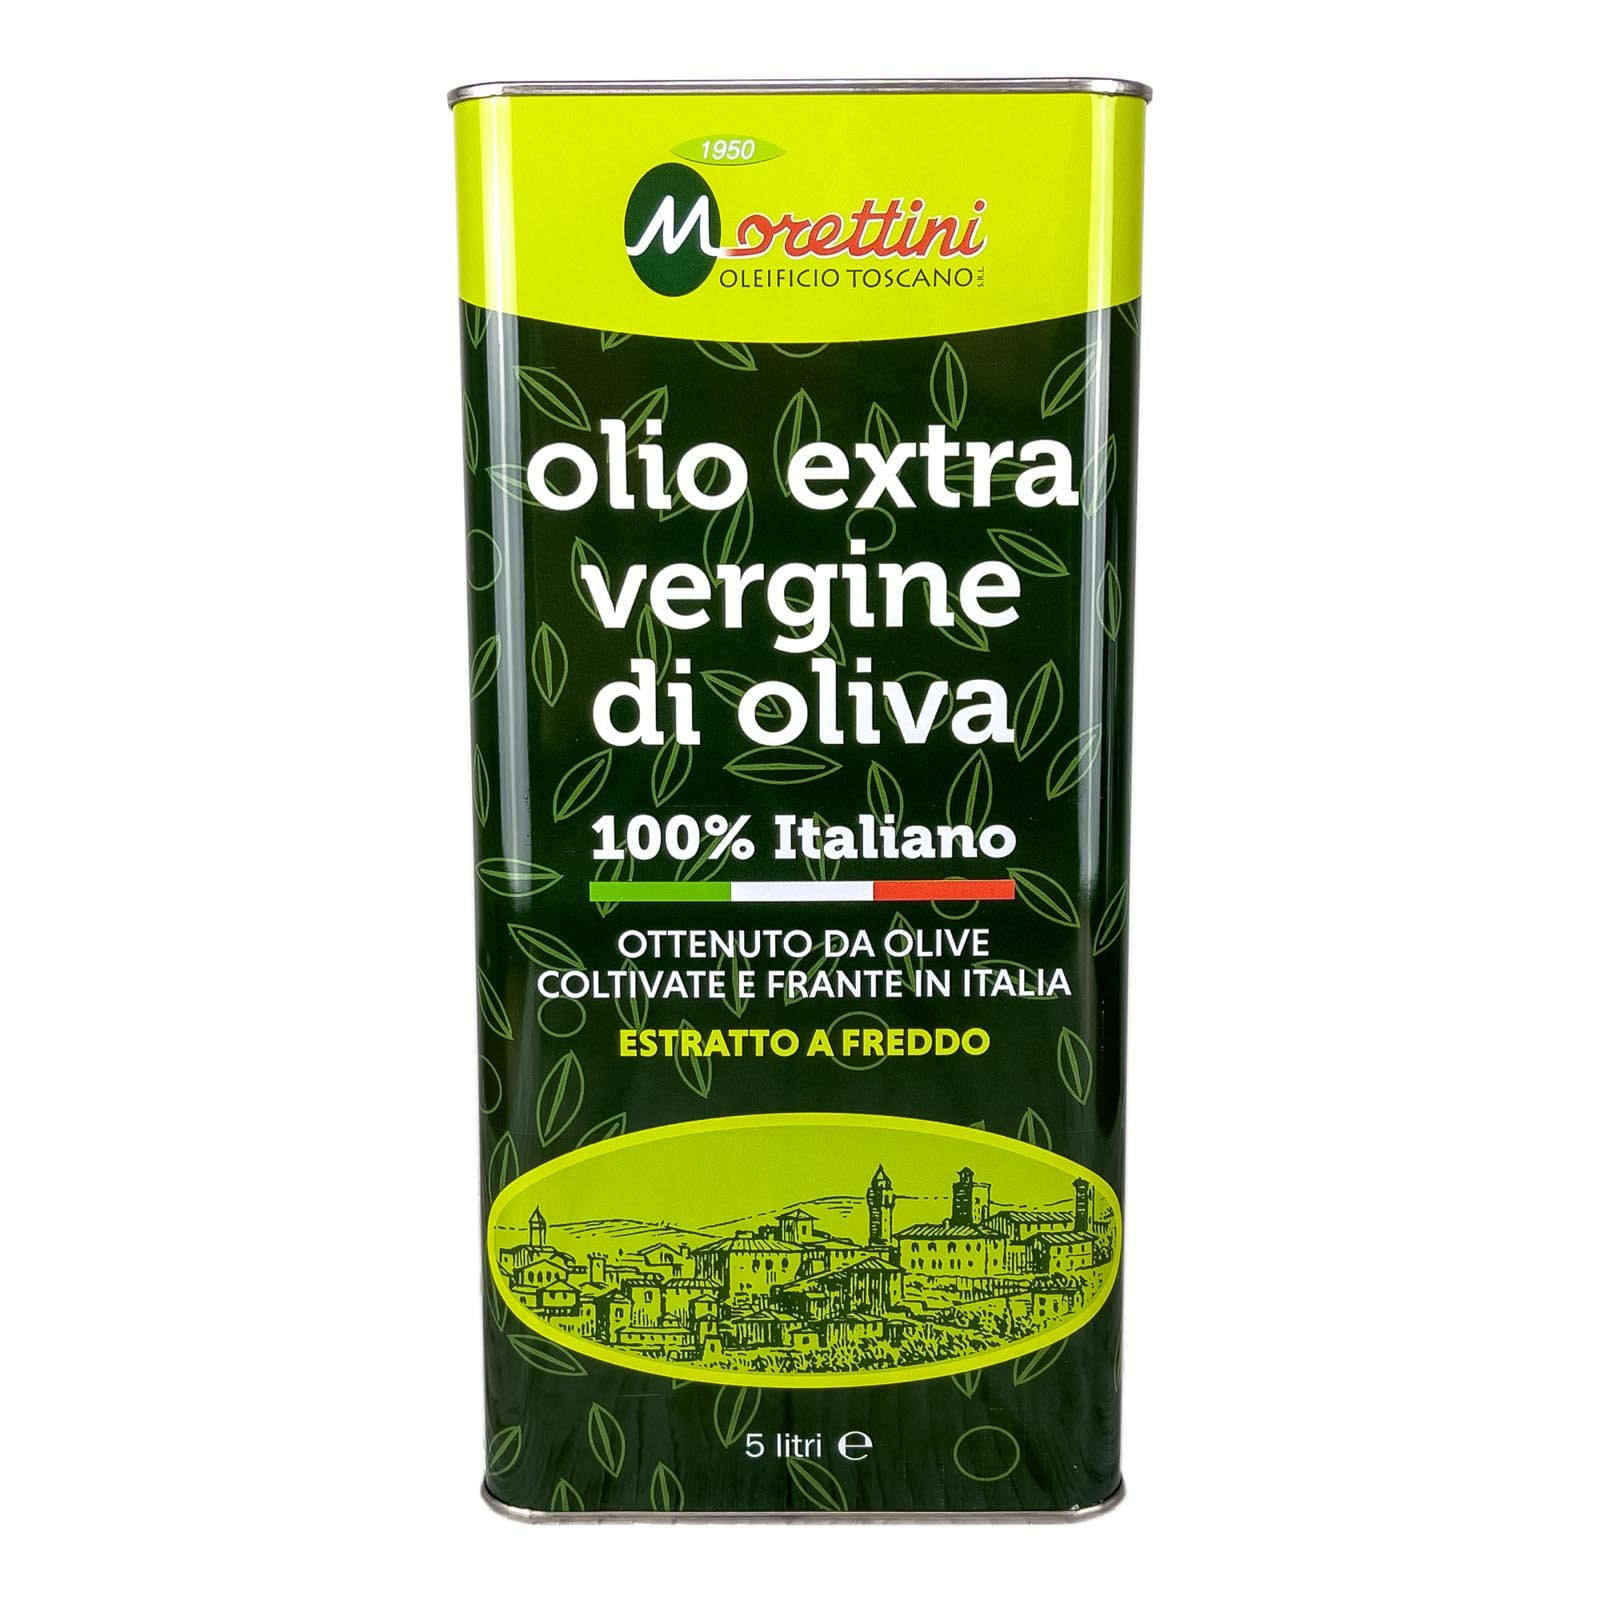 „Morettini 100% Italiano”, extra natives Olivenöl, hergestellt aus einer geschickten Mischung der besten extra nativen Öle Mittelitaliens - Produktionsjahr 2021/2022.